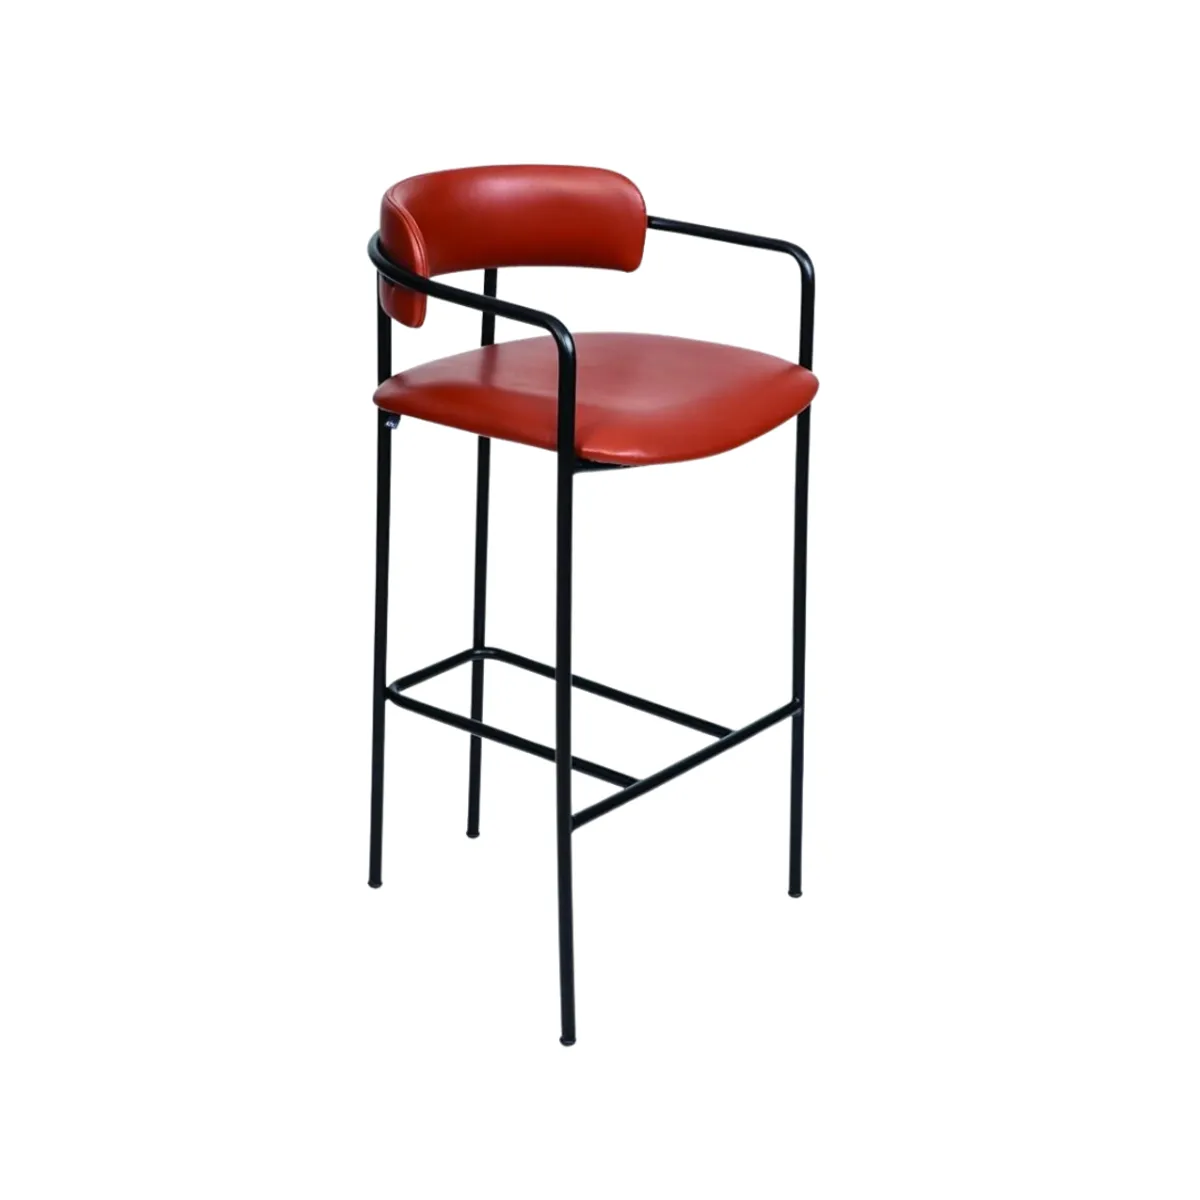 Claribel bar stool +